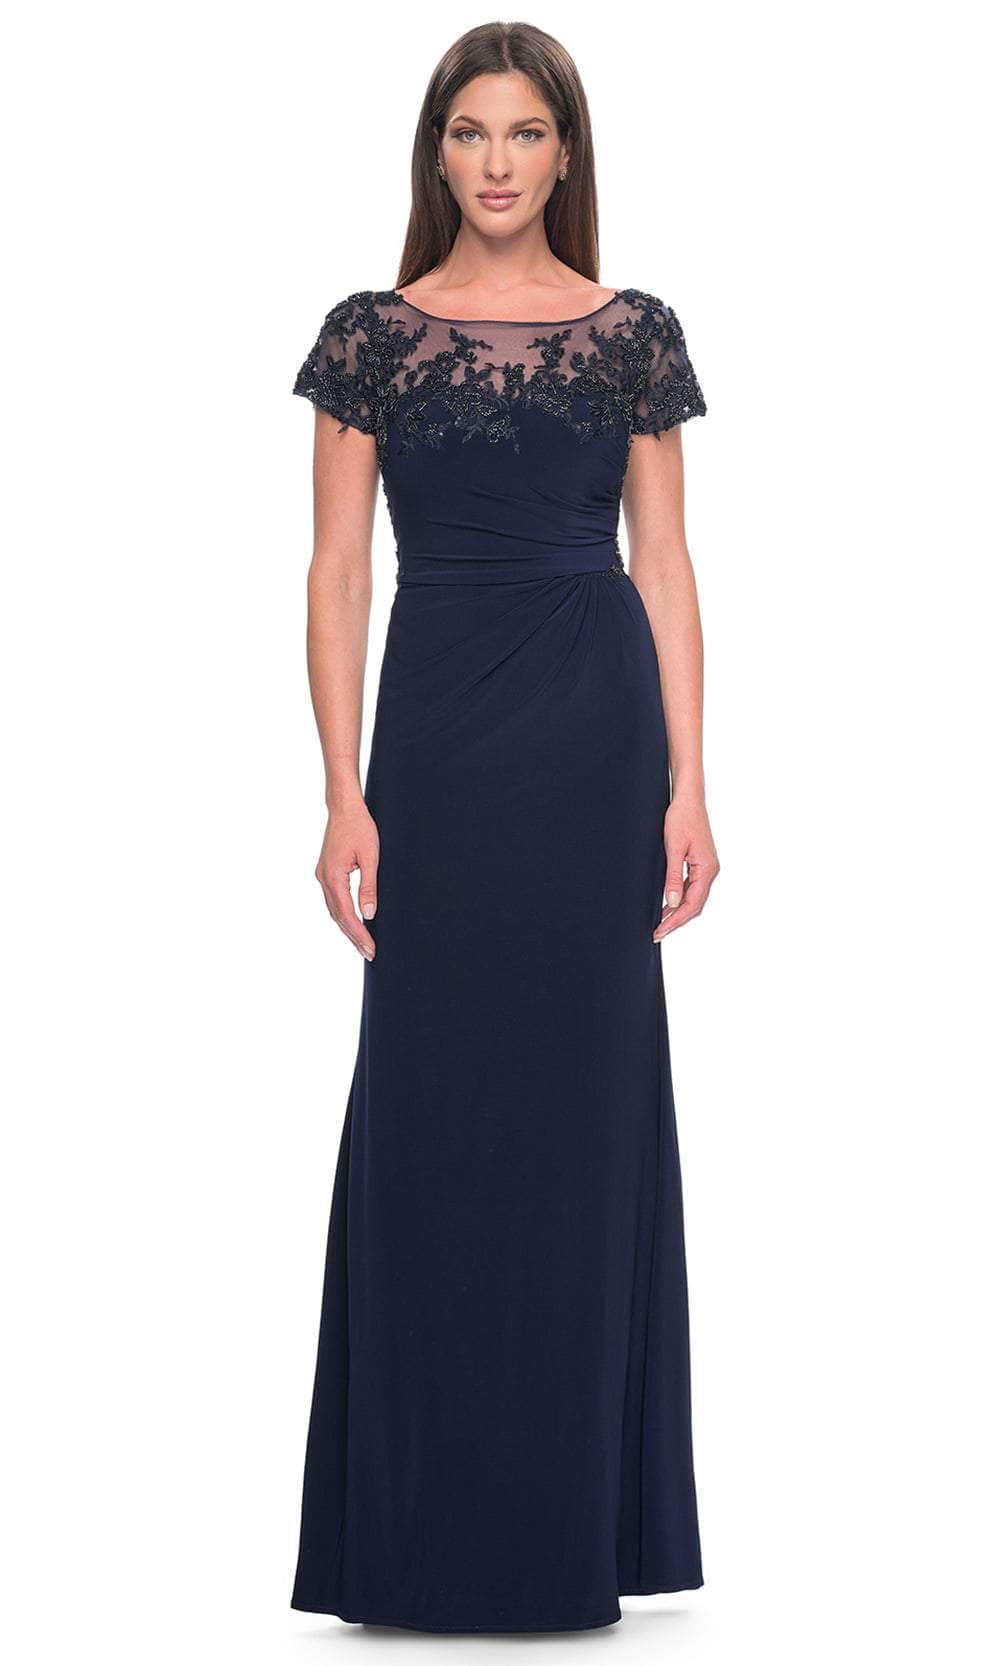 Image of La Femme 31805 - Short Sleeve Ruched Detailed Evening Dress